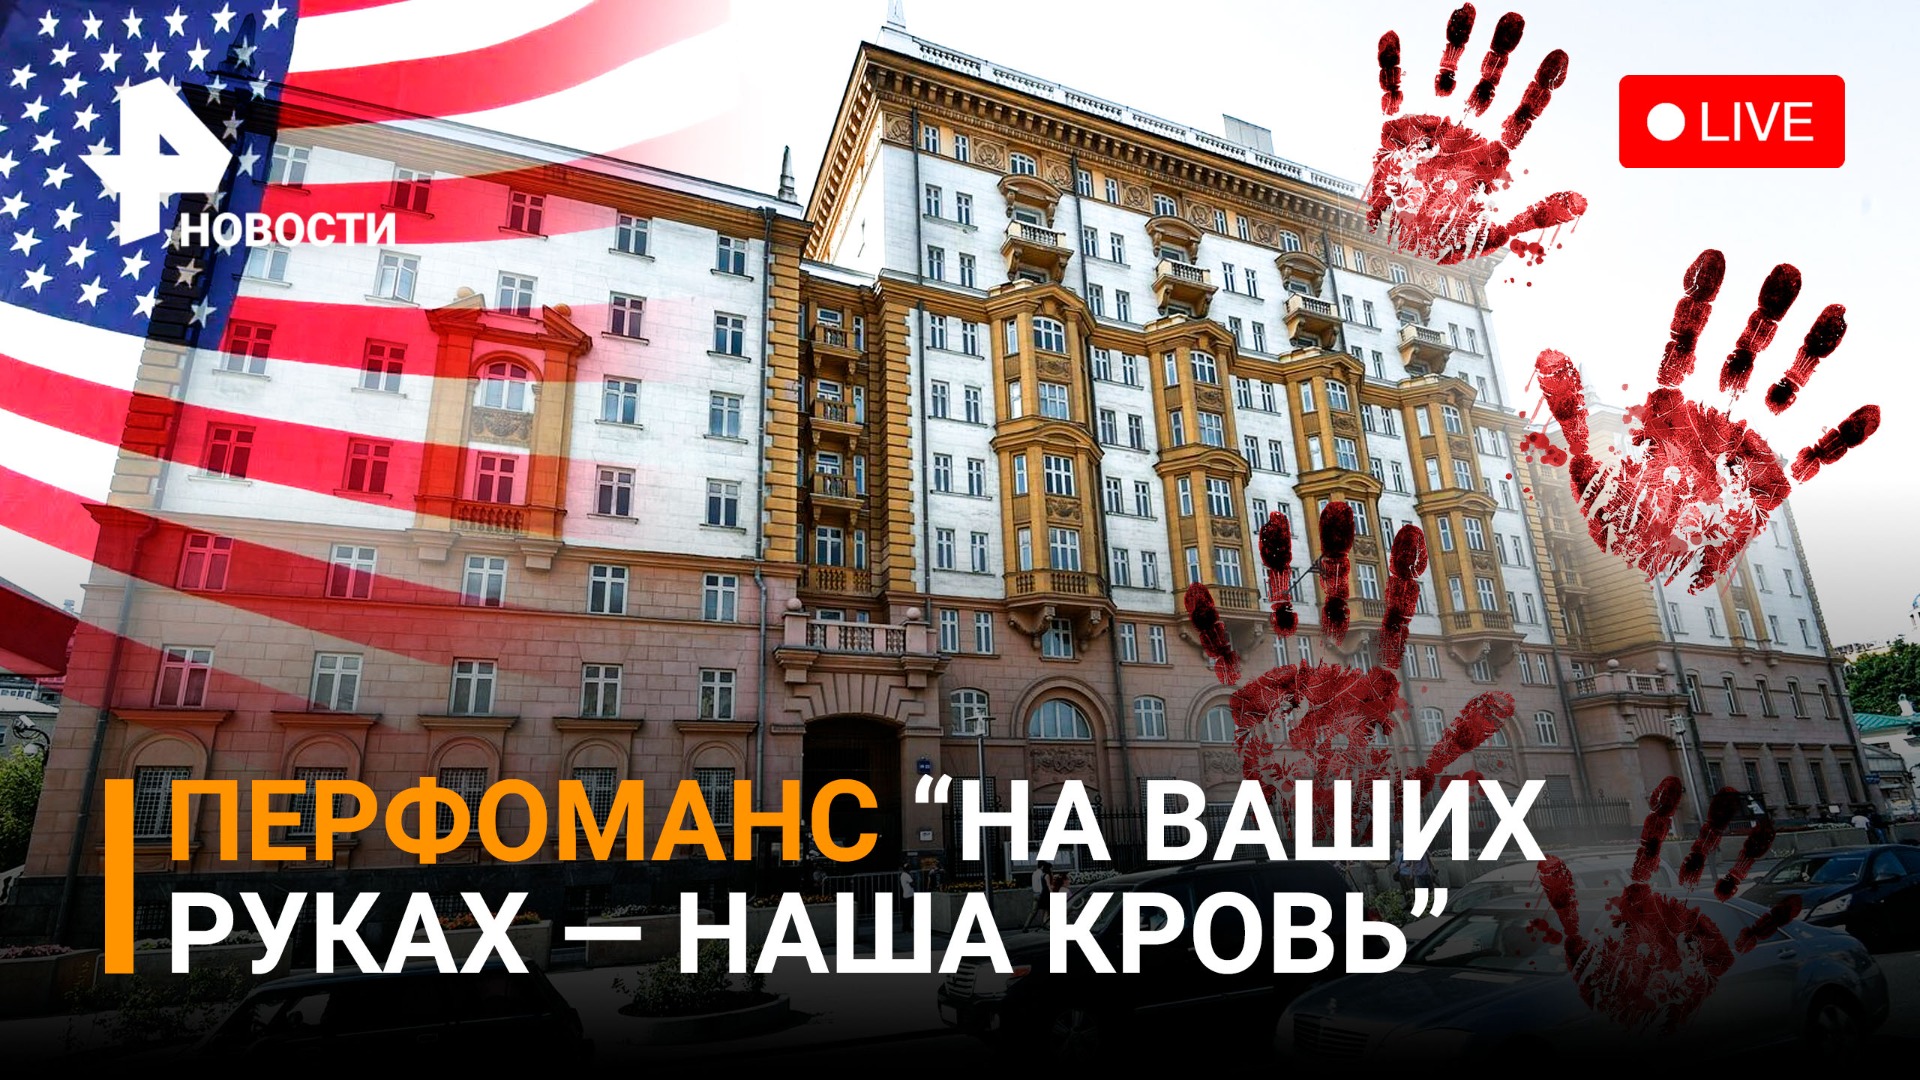 Перфоманс у посольства США в Москве "На ваших руках — наша кровь!", посвященная детям Донбасса